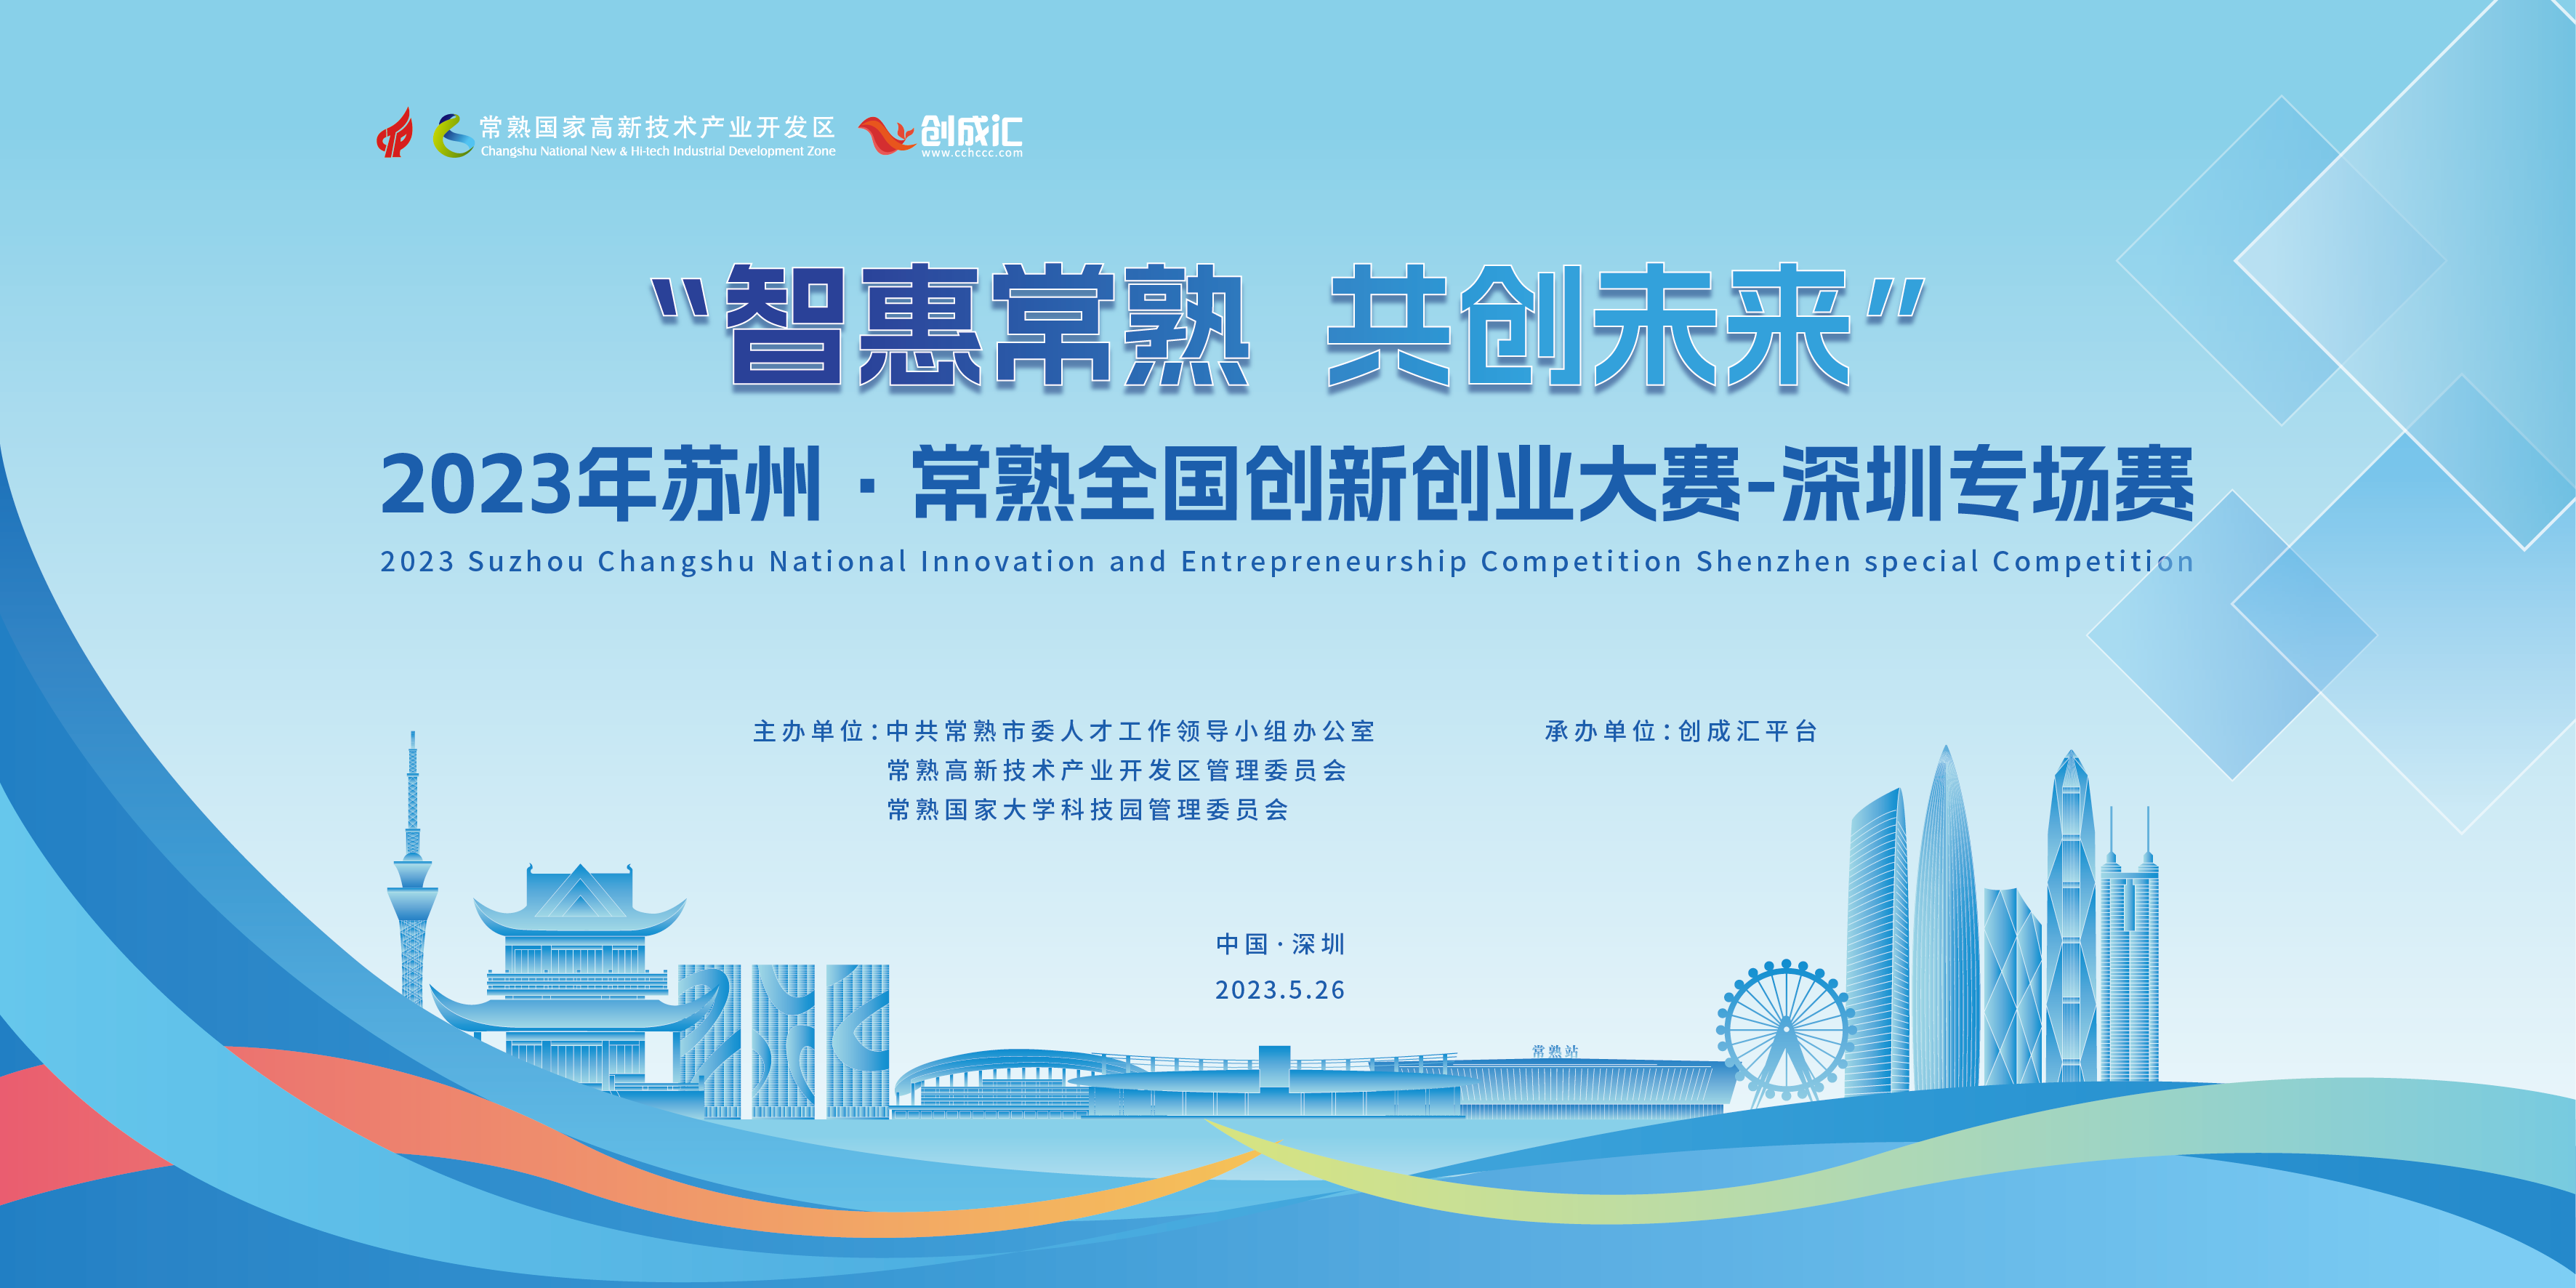 2023年“智惠常熟 共创未来” 苏州·常熟全国创新创业大赛——深圳专场赛